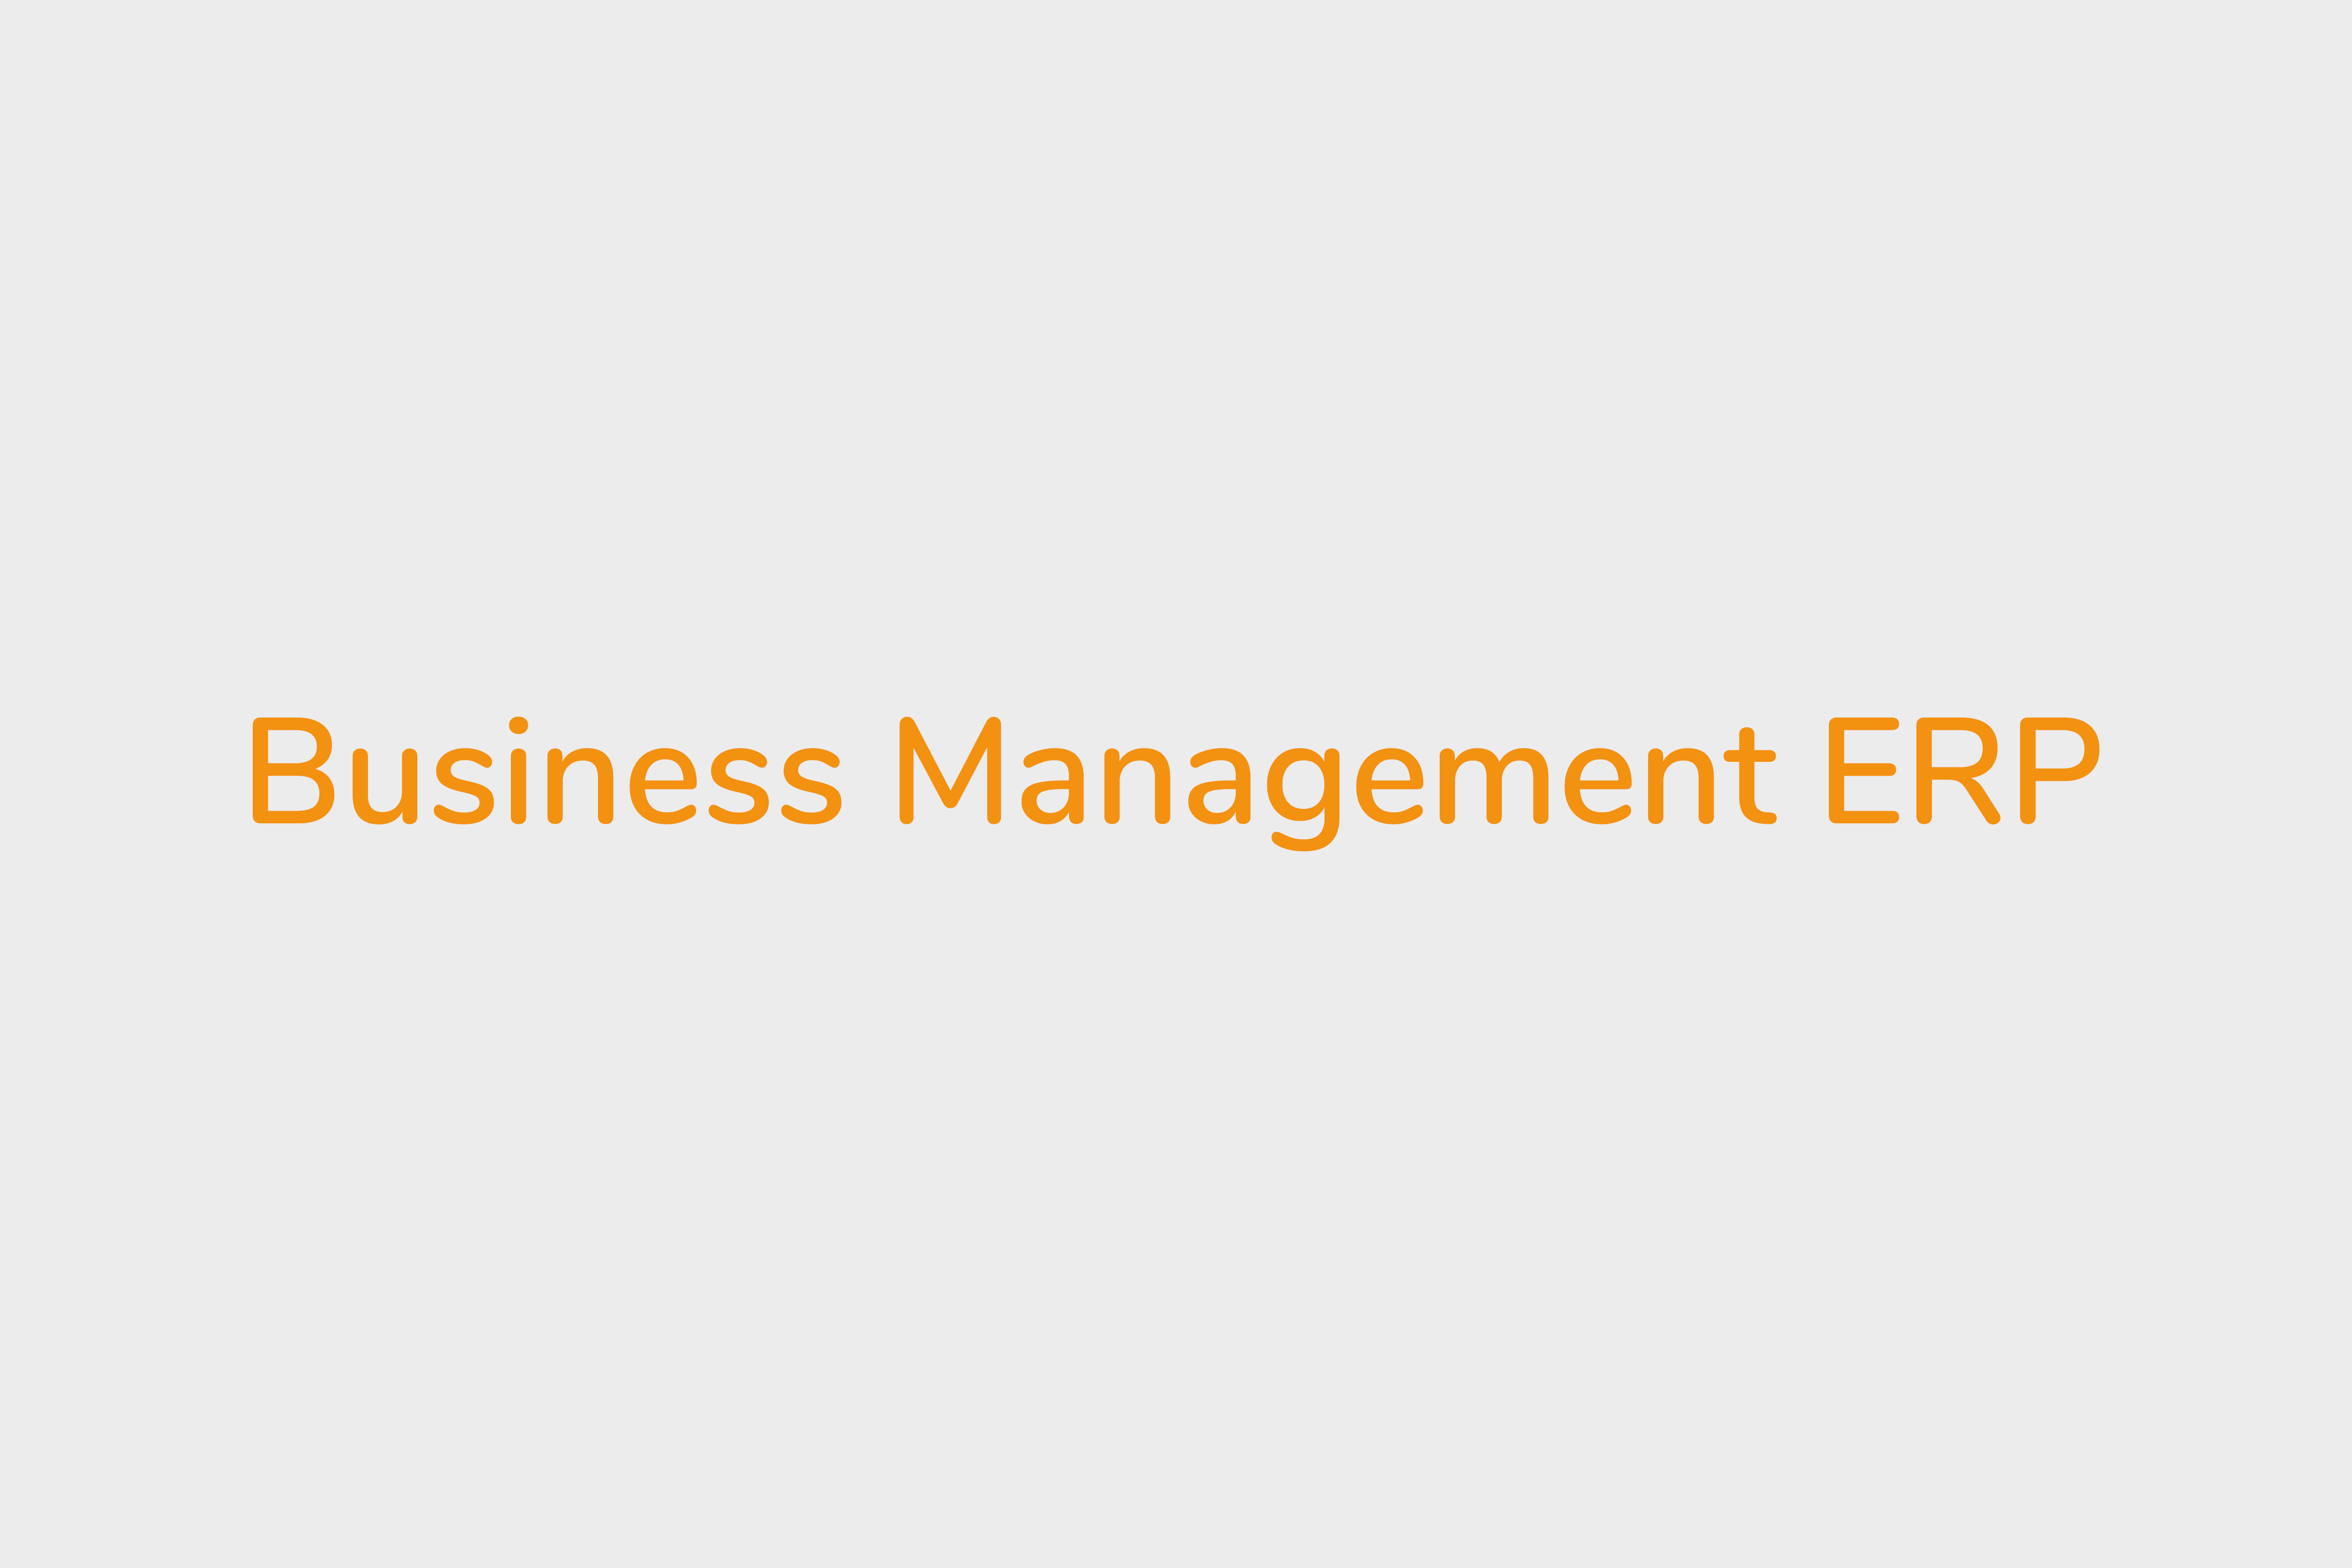 Business management-ERP